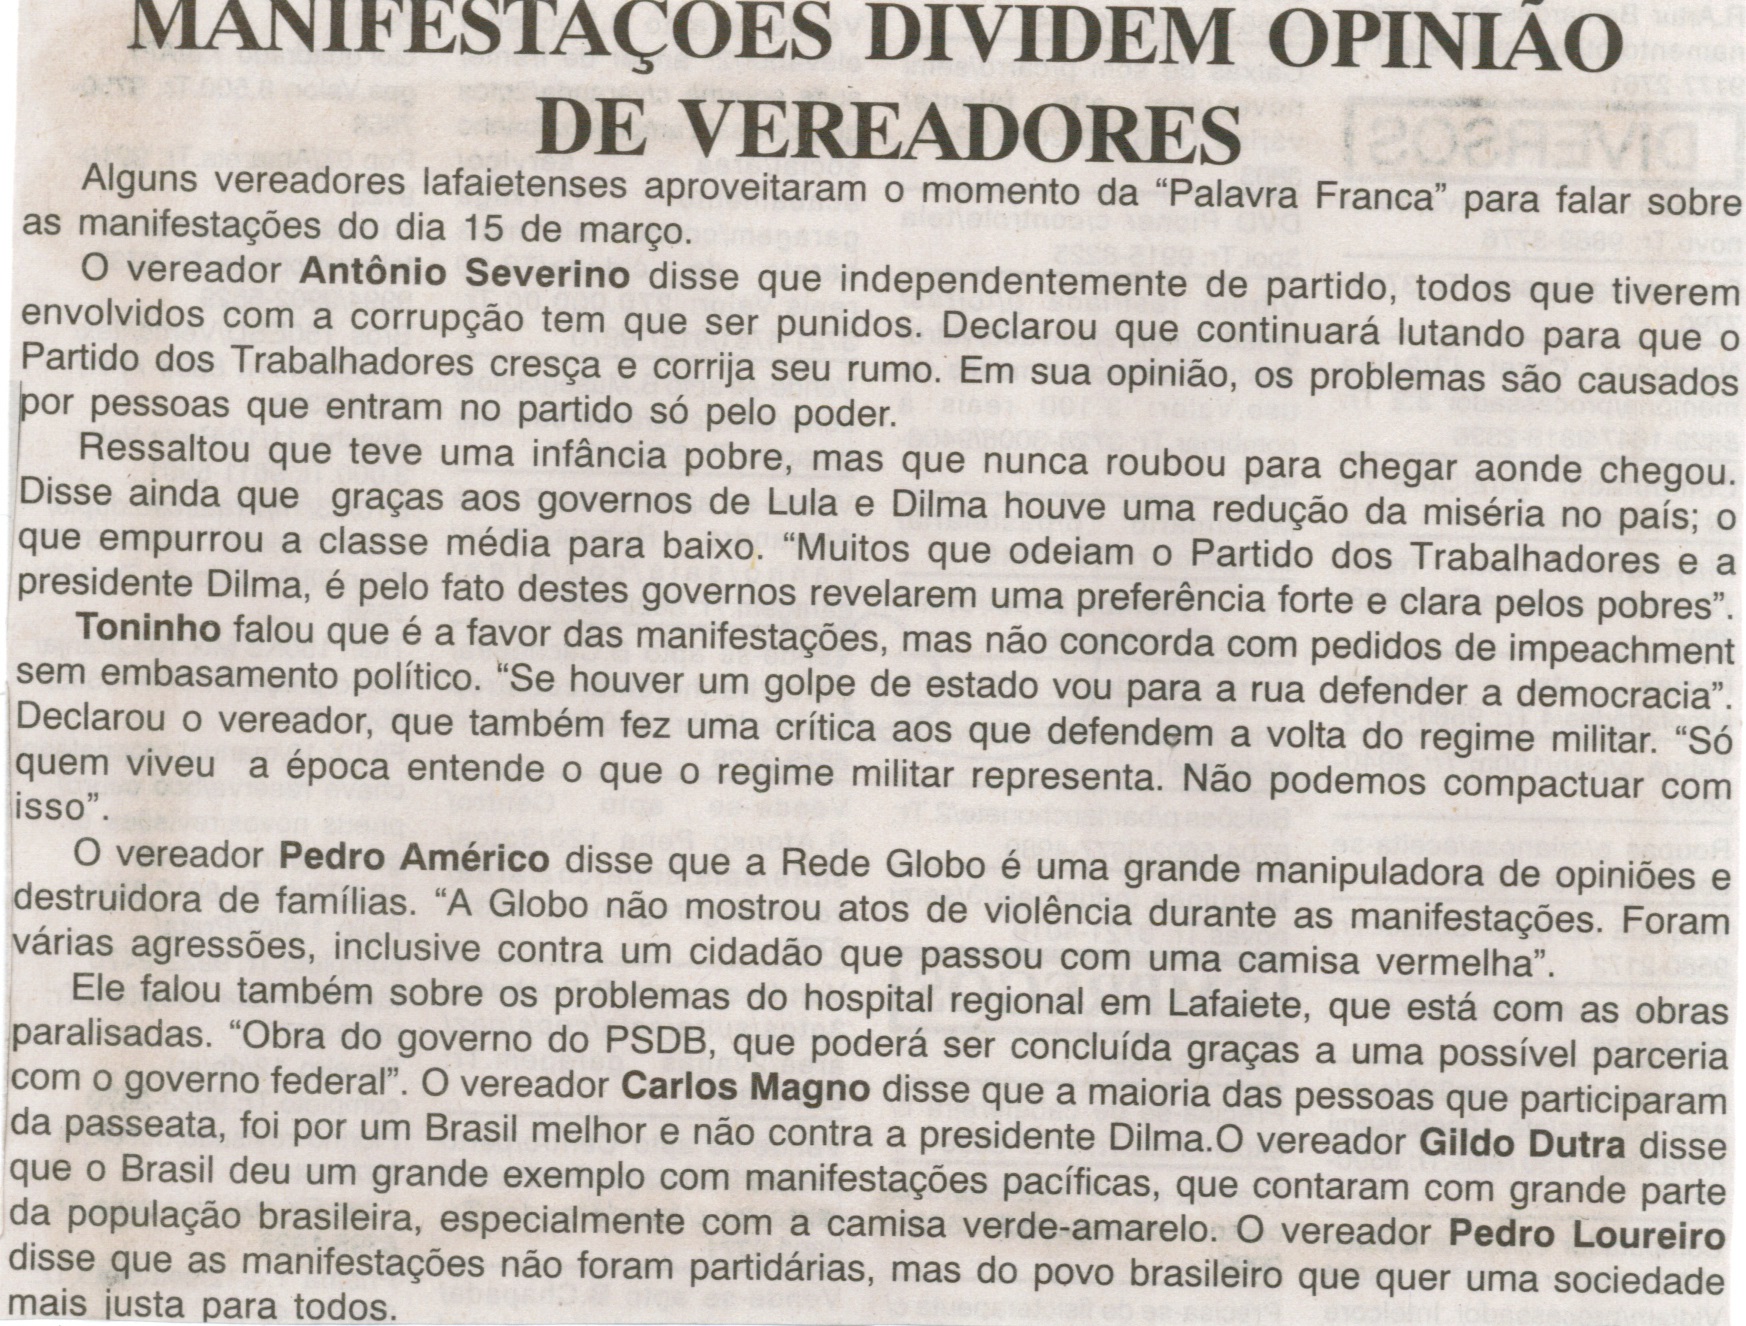 Manifestações dividem opinião de vereadores. Jornal Nova Gazeta, Conselheiro Lafaiete, 27 mar. 2015, 834ª ed., p. 06.